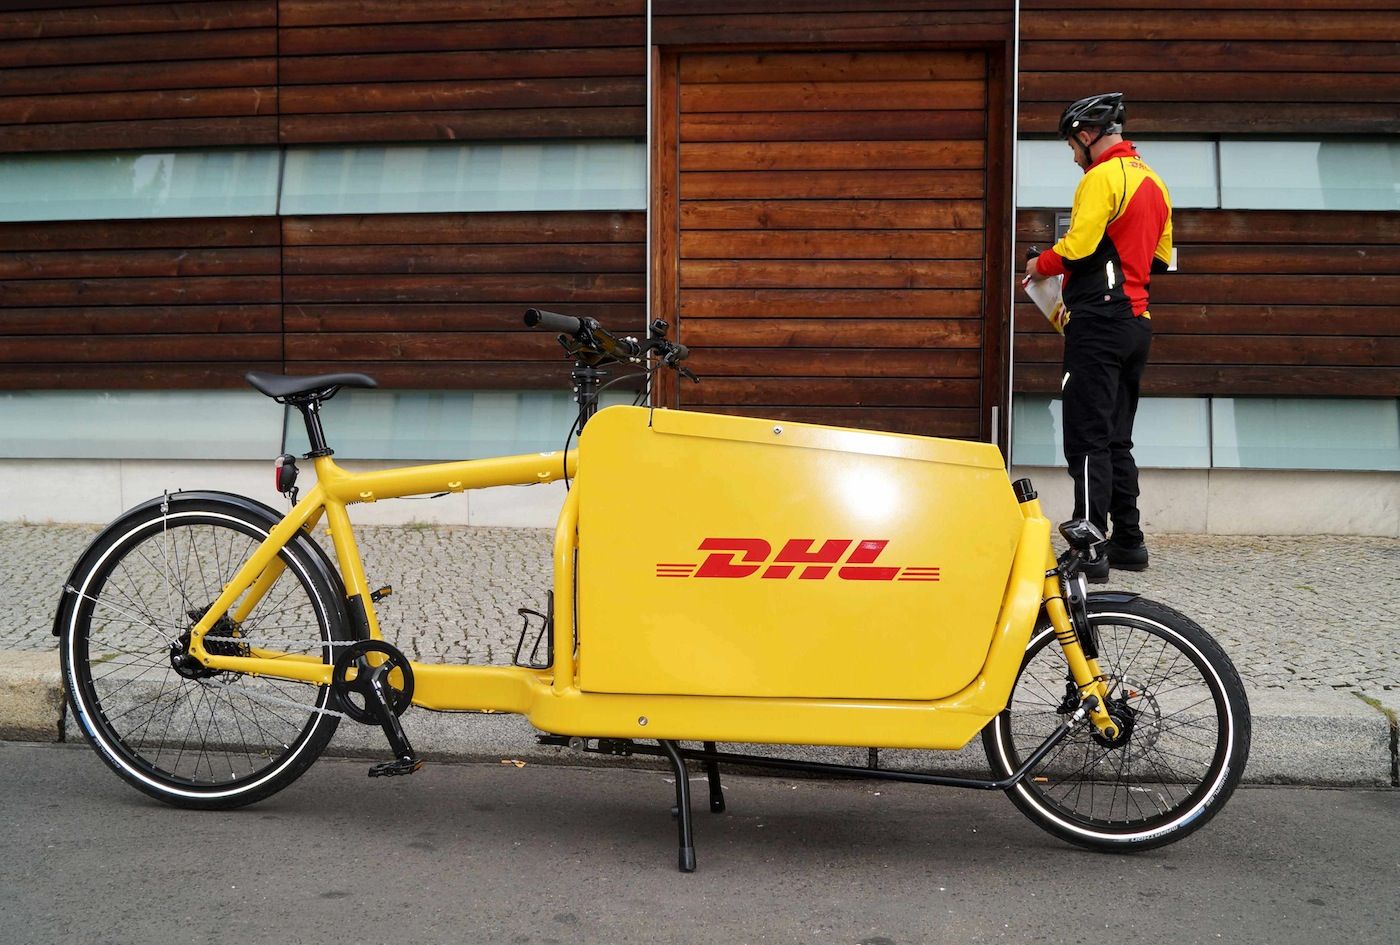 Servicio de entrega en bicicleta de DHL Express